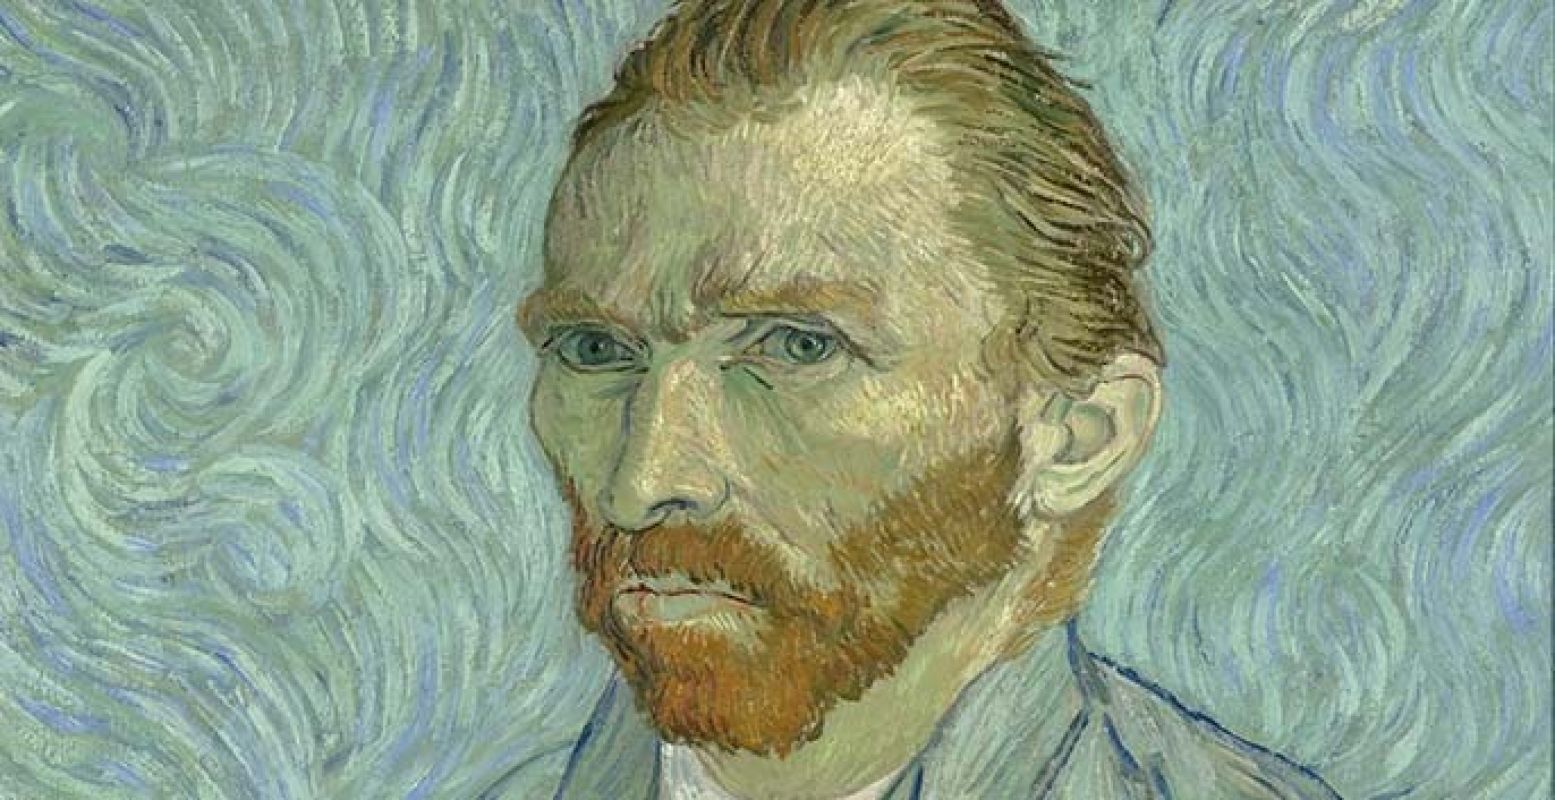 Vincent van Gogh schilderde zijn bekendste aan het einde van zijn leven. Roland Aalbers: "Hij leefde maar kort, pleegde toen ook waarschijnlijk zelfmoord en daarna werd hij pas populair." Beeld: Zelfportret Vincent van Gogh